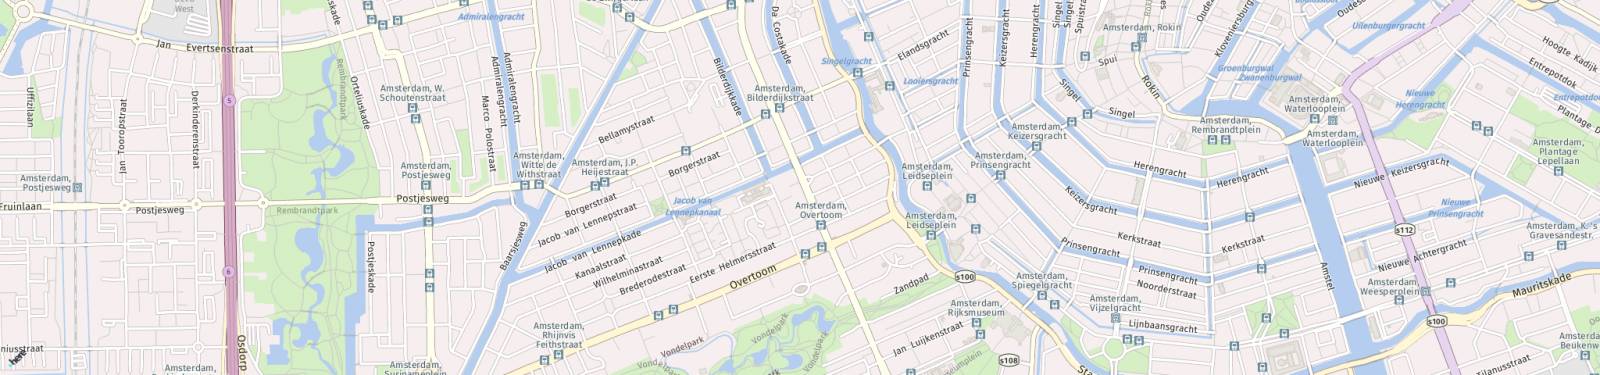 Kaart met locatie Garage Eerste Constantijn Huygensstraat